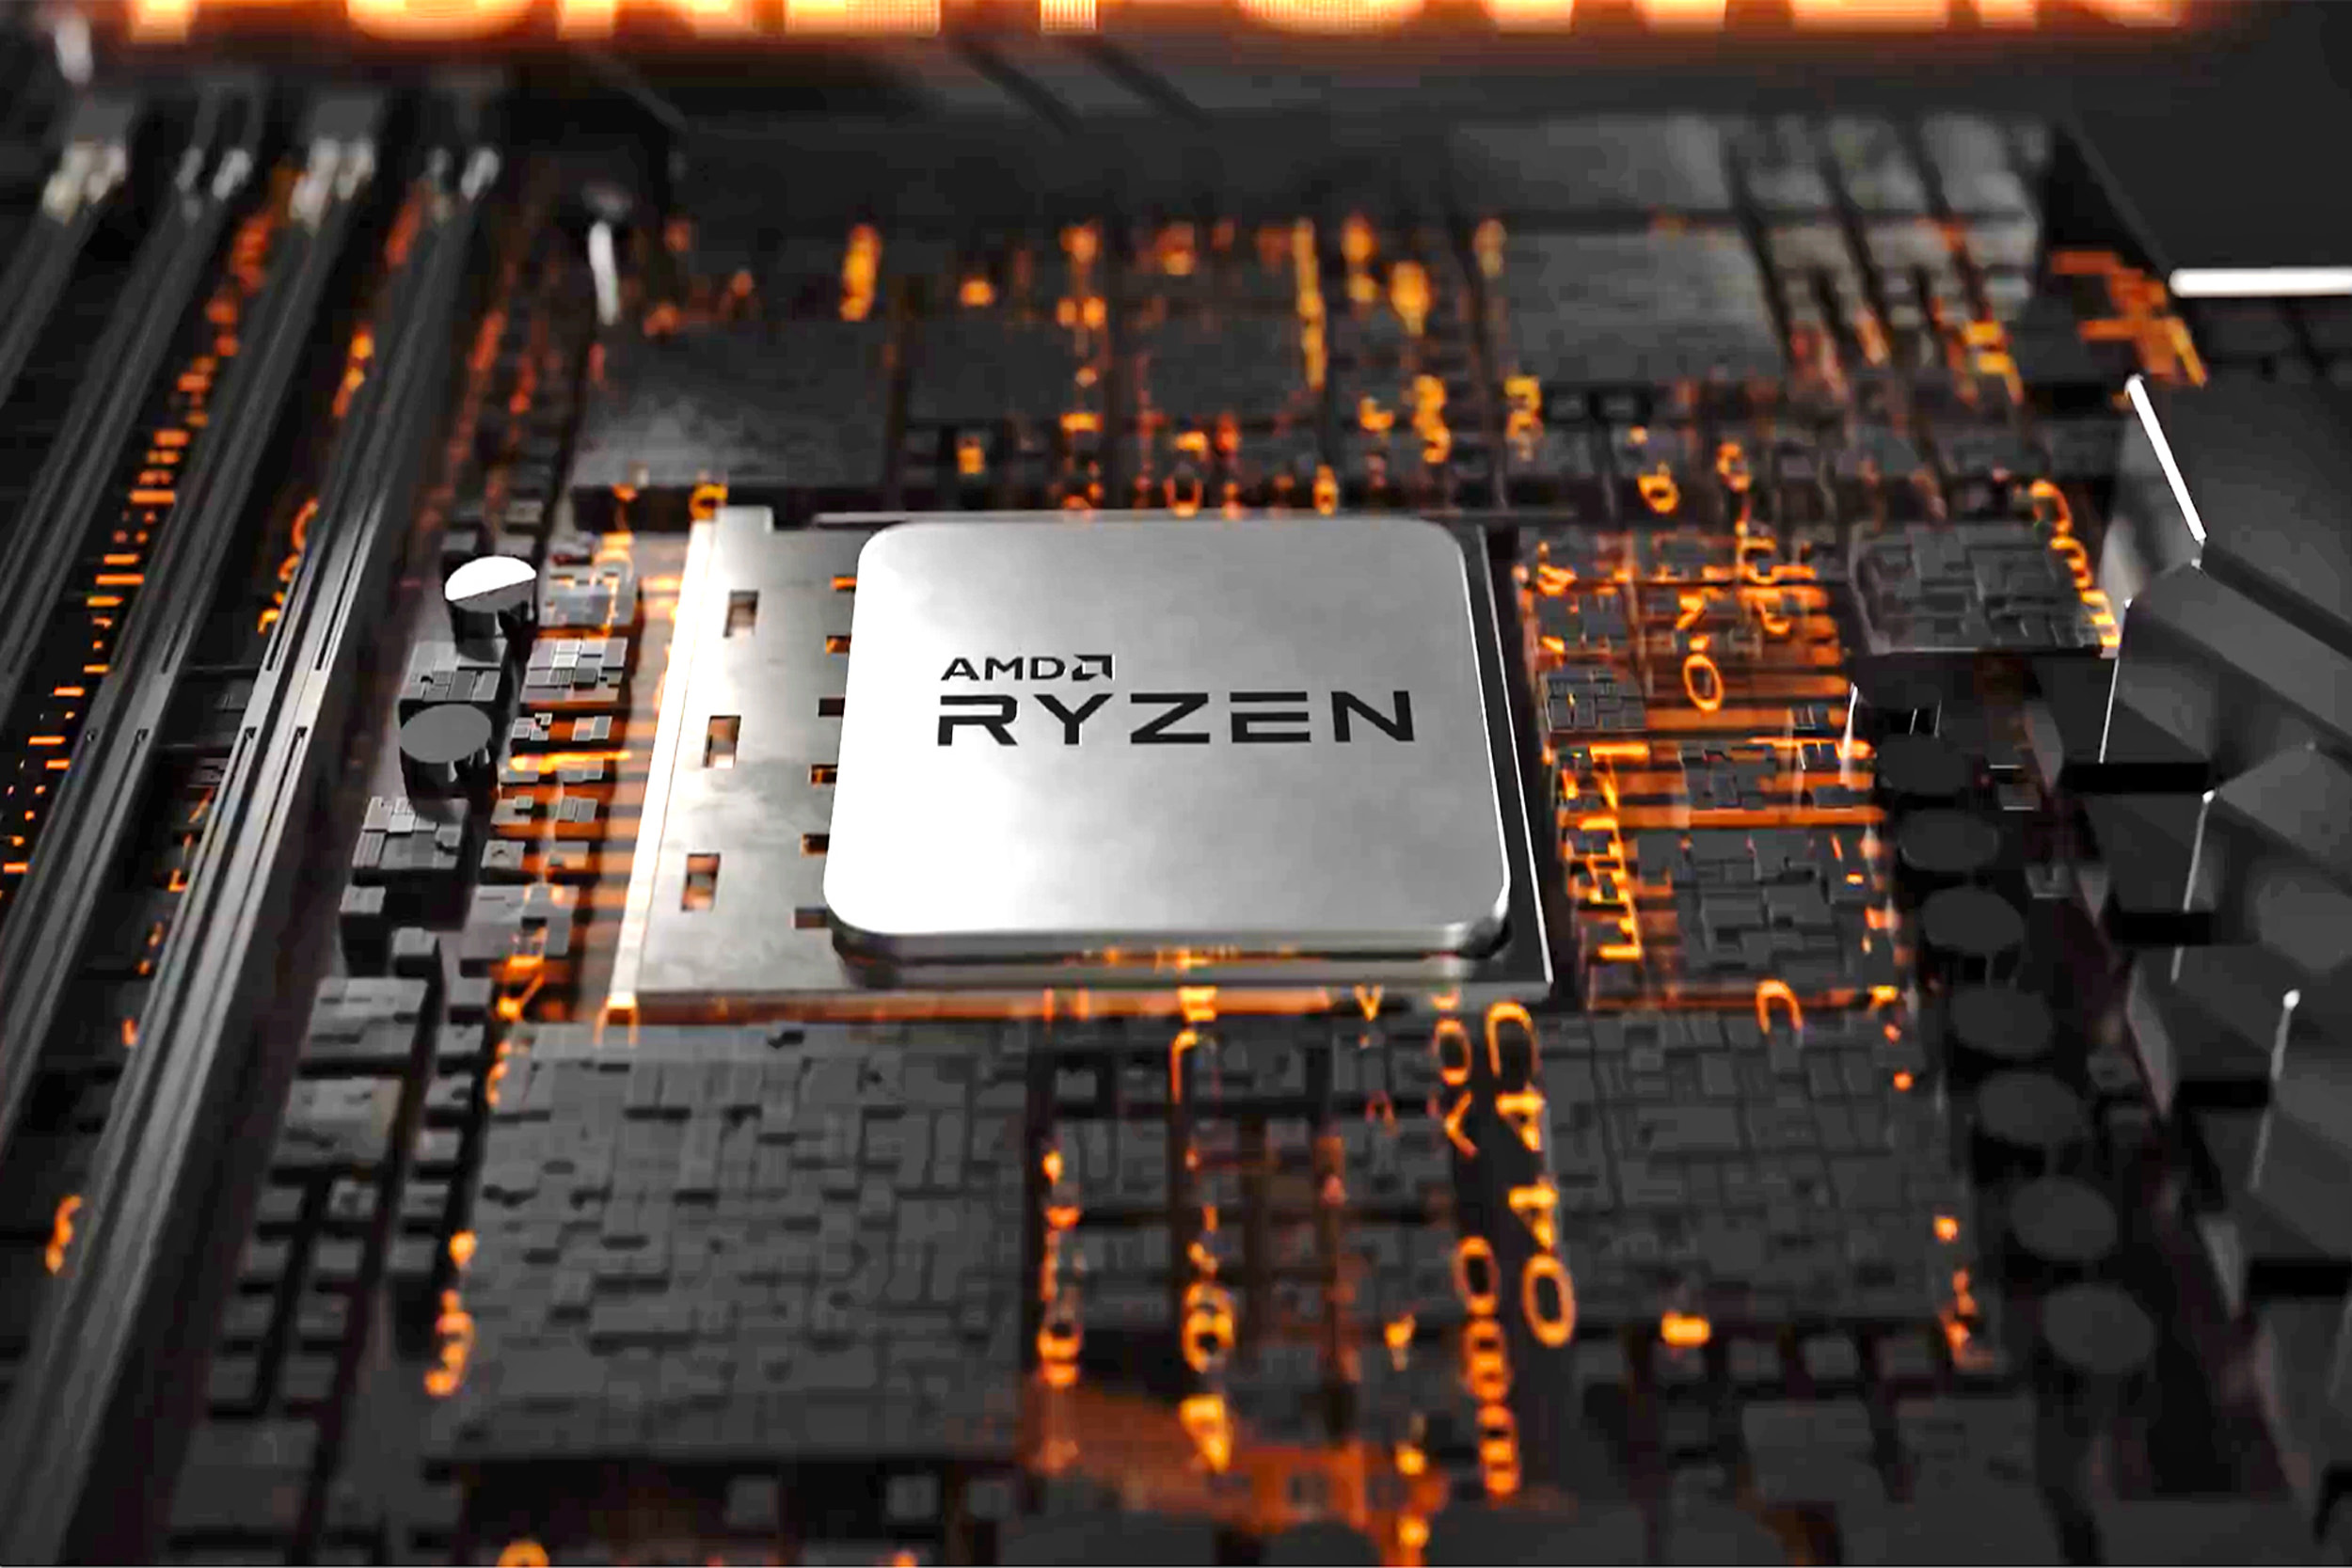 Amd ryzen 5600 материнская плата. Ryzen 9 3900x. AMD Ryzen 5 2600x. Процессор картинки. Процессоры куча.